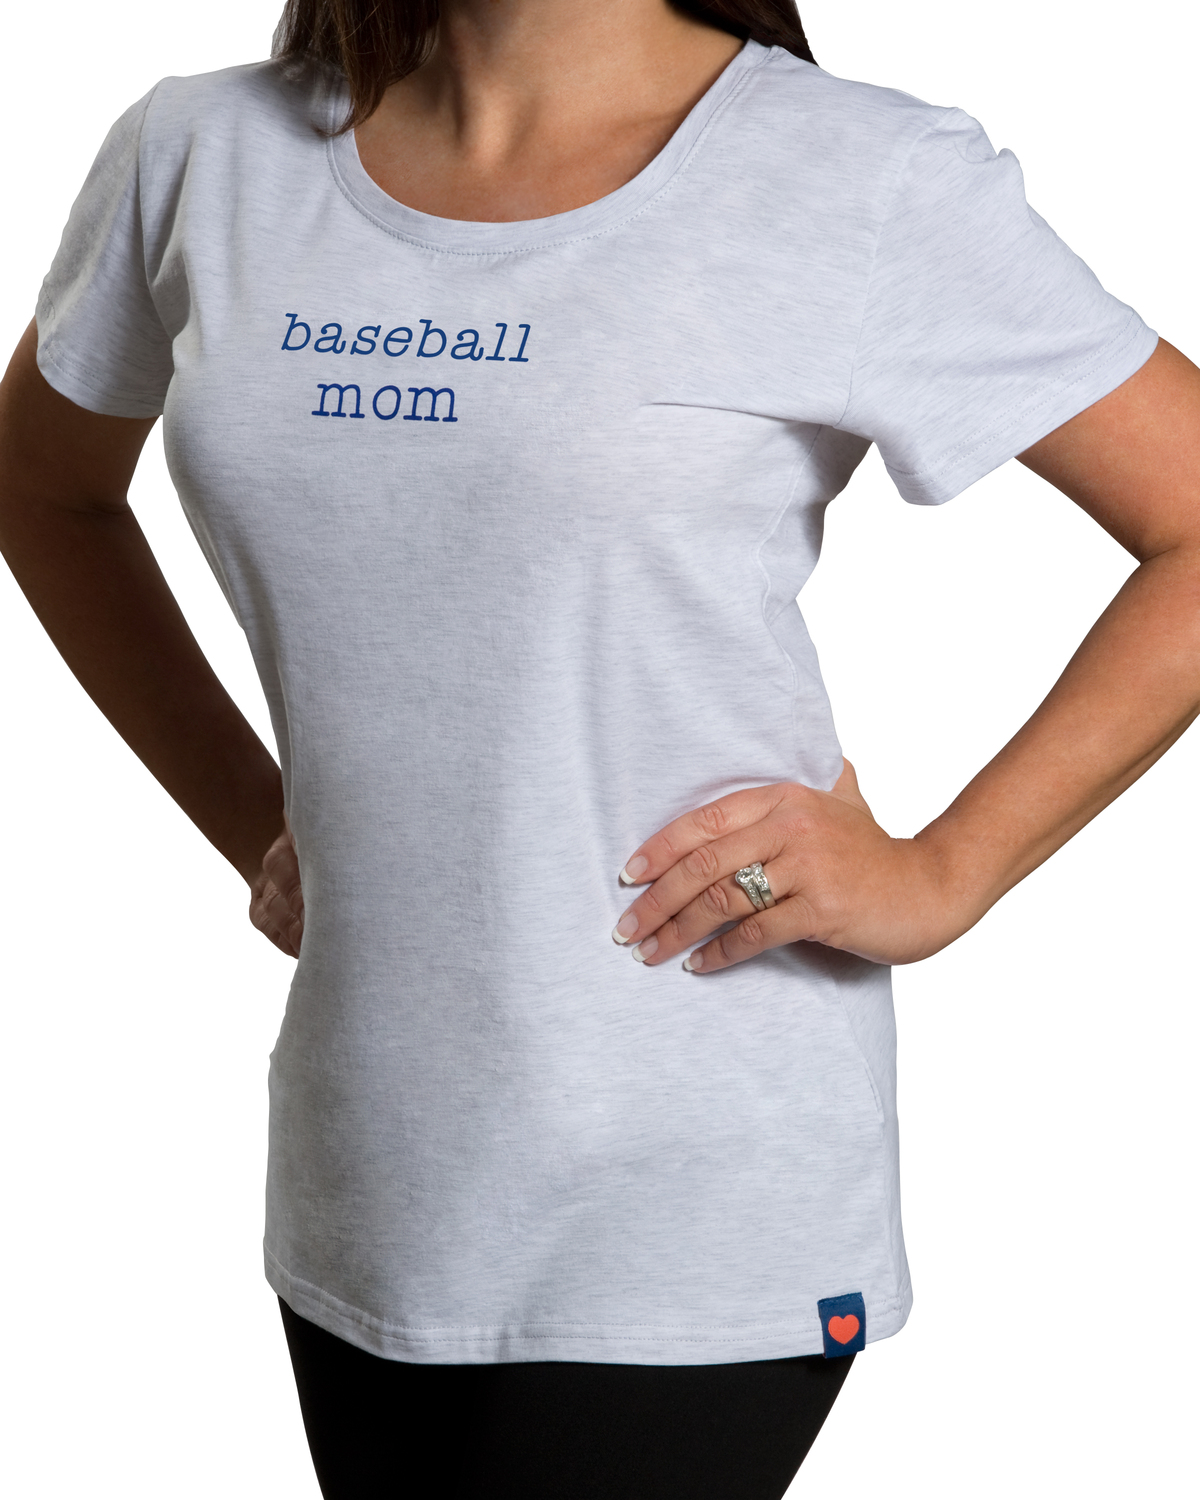 Baseball Mom by Mom Love - Baseball Mom - Medium Gray T-Shirt